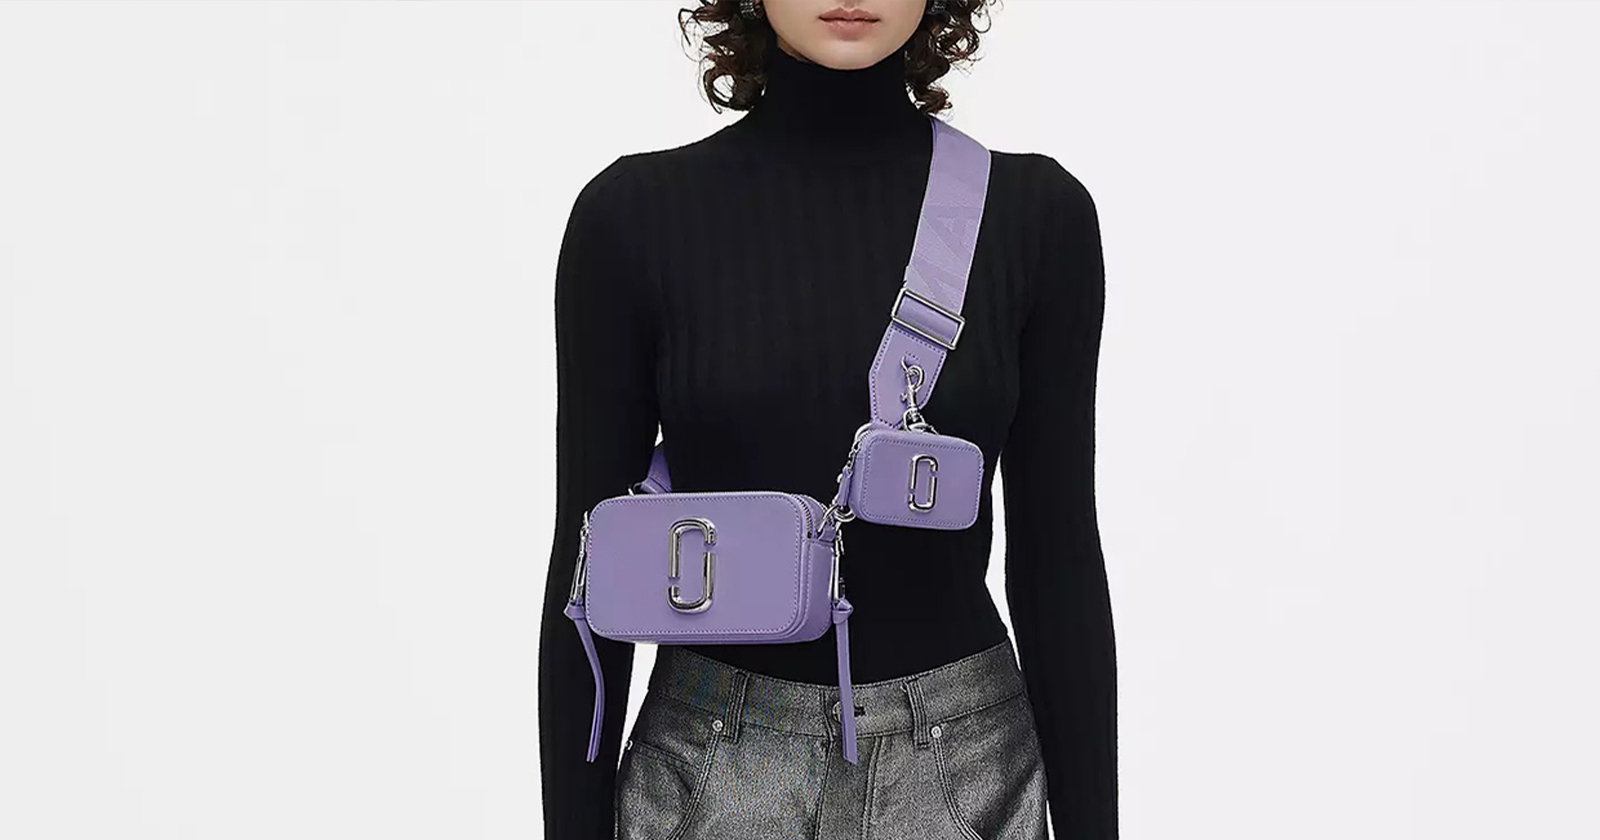 Marc Jacobs Khaki 'The Camera' Shoulder Bag